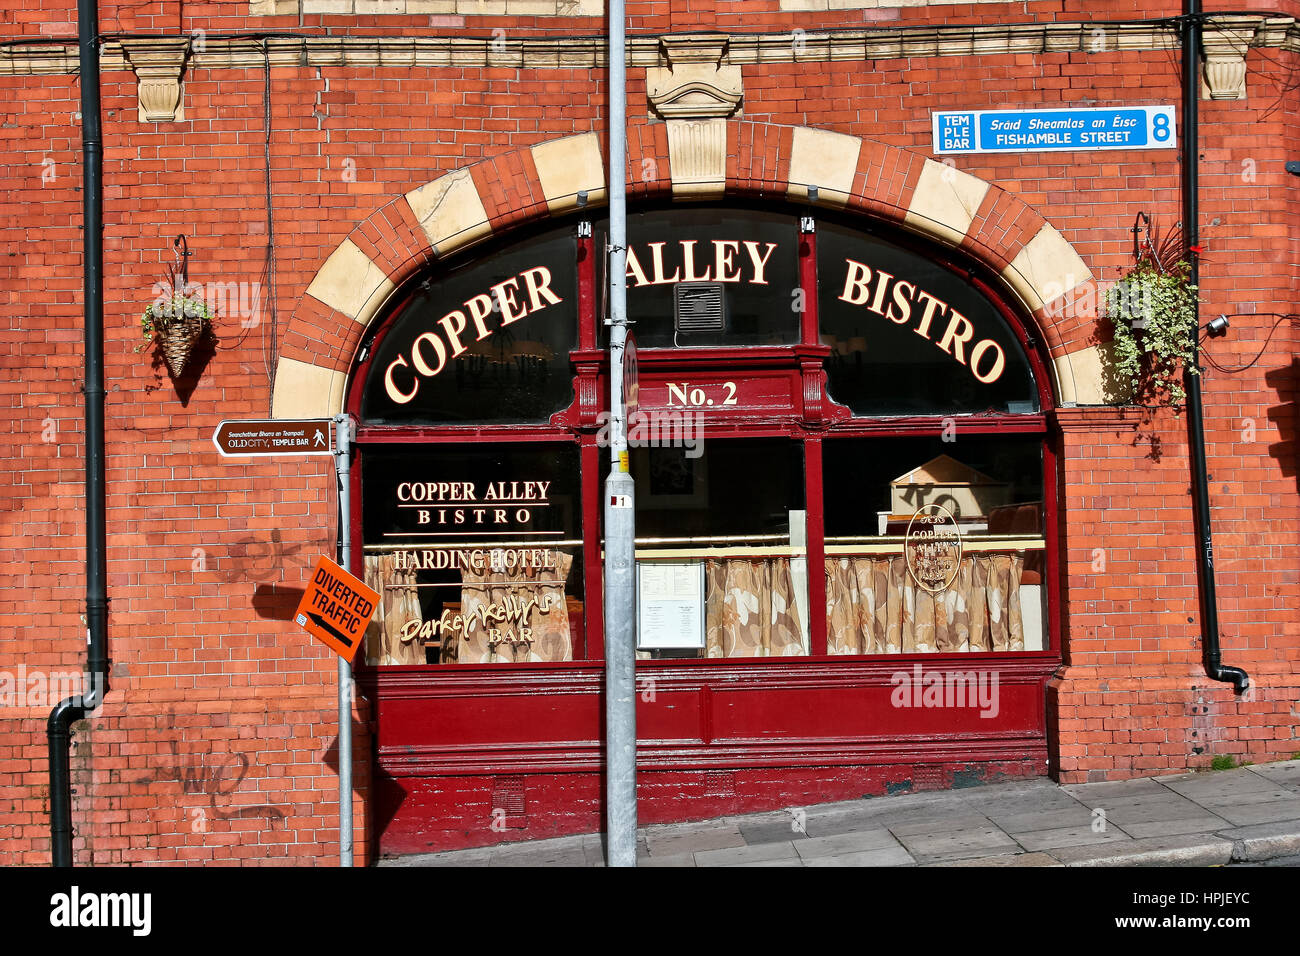 Copper Alley Bistro, typisch irischer Pub, Glasfenster, rote Ziegelsteine, außen. Dublin, Republik Irland, Europa, Europäische Union. Reiseziele. Stockfoto